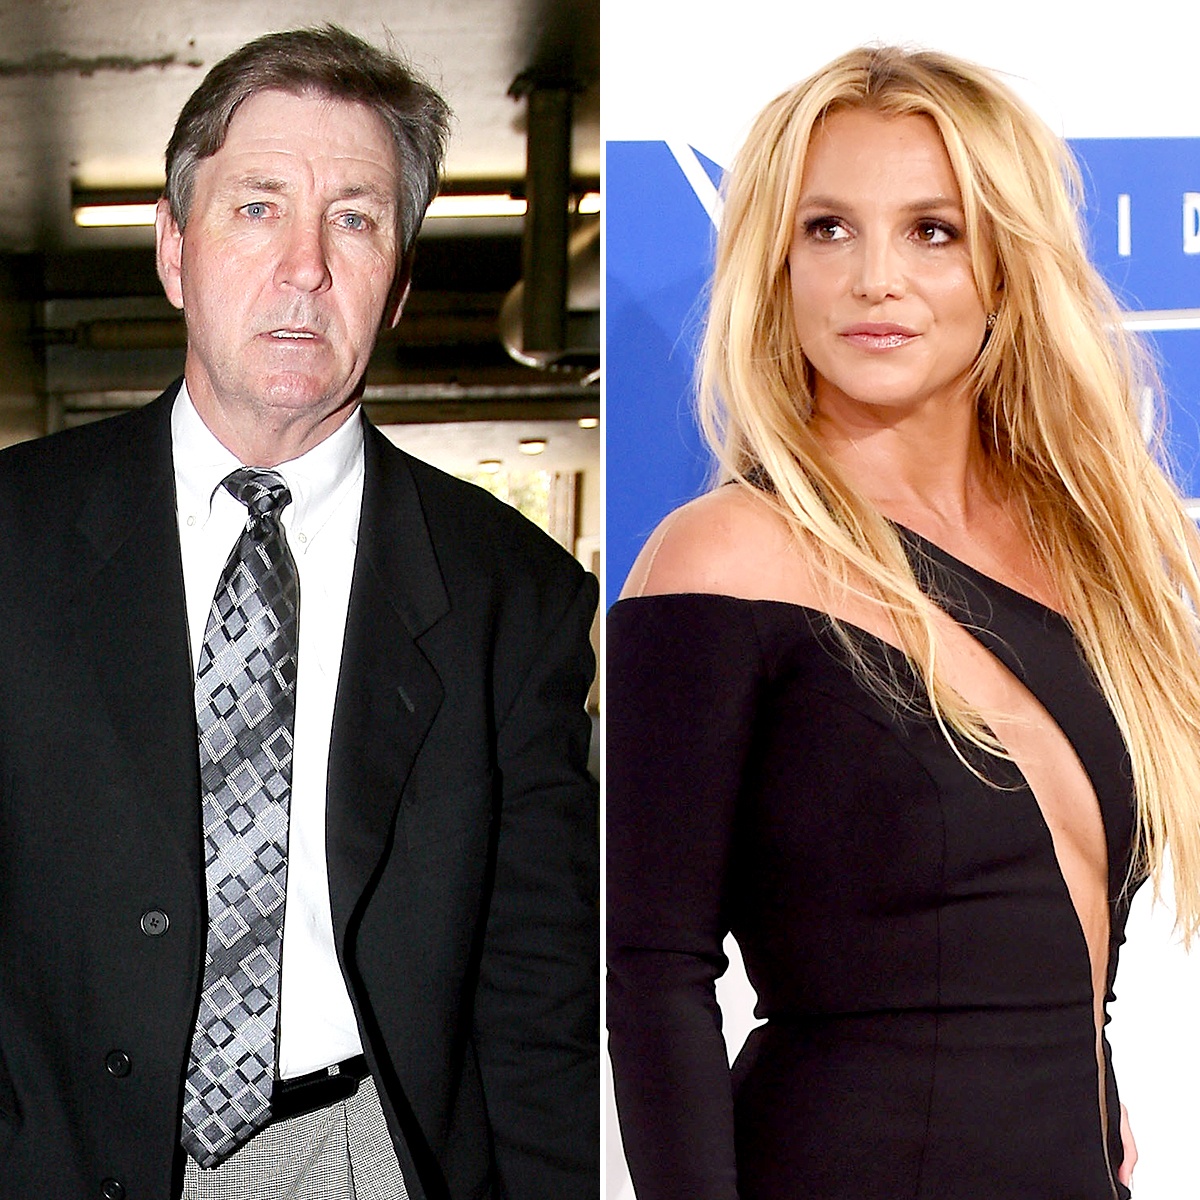 James Spears es finalmente suspendido como tutor de su hija Britney Spears.